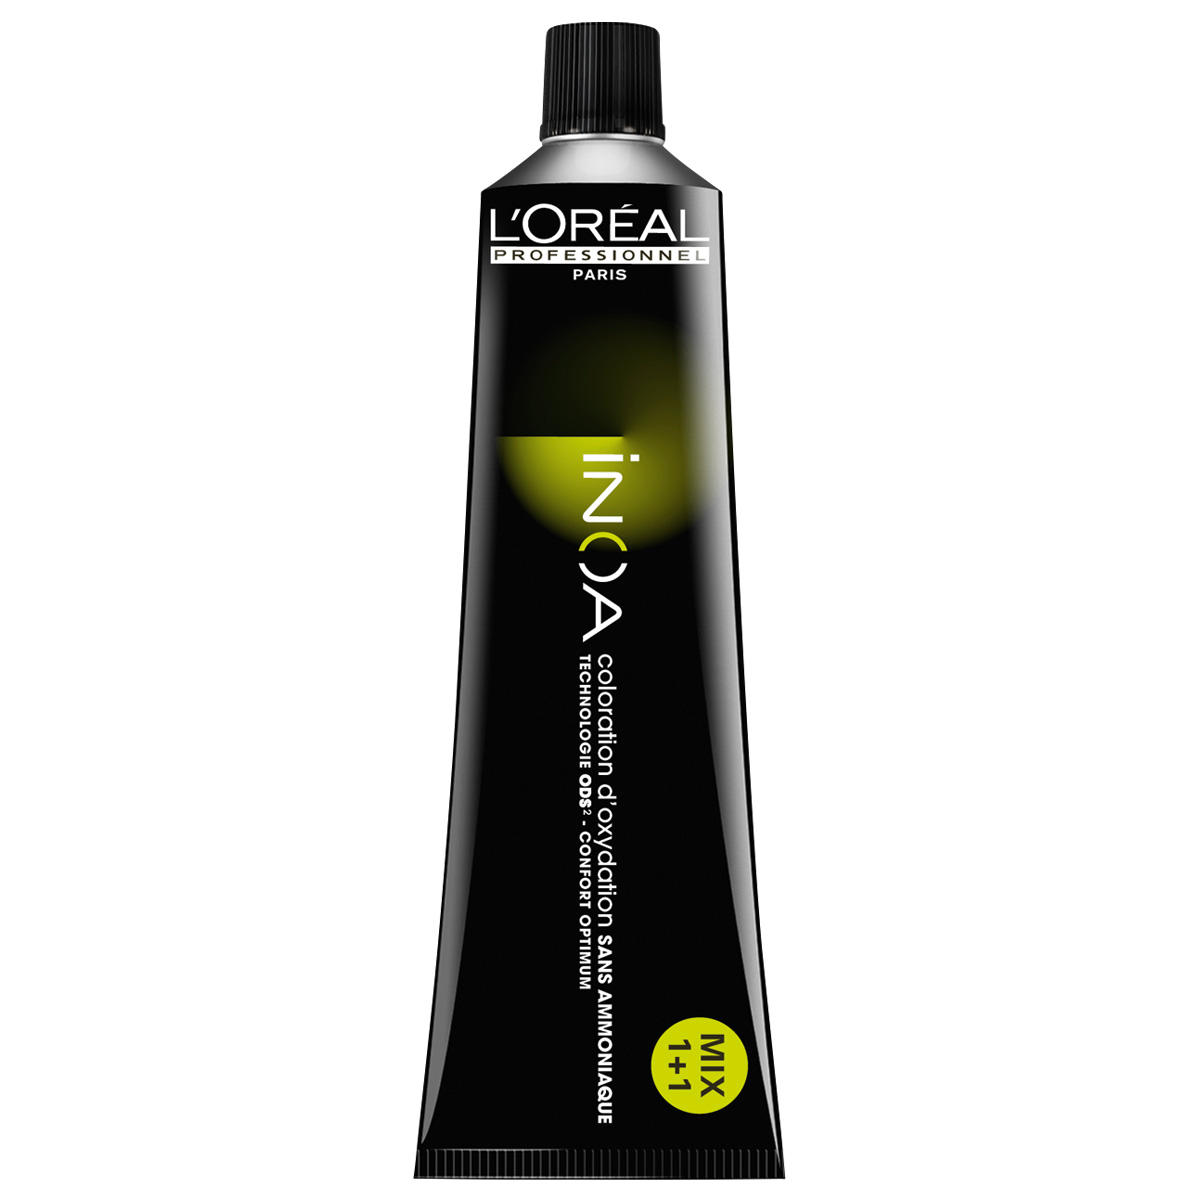 L'Oréal Professionnel Paris Coloration 6,45 Rubio oscuro cobrizo caoba, tubo 60 ml